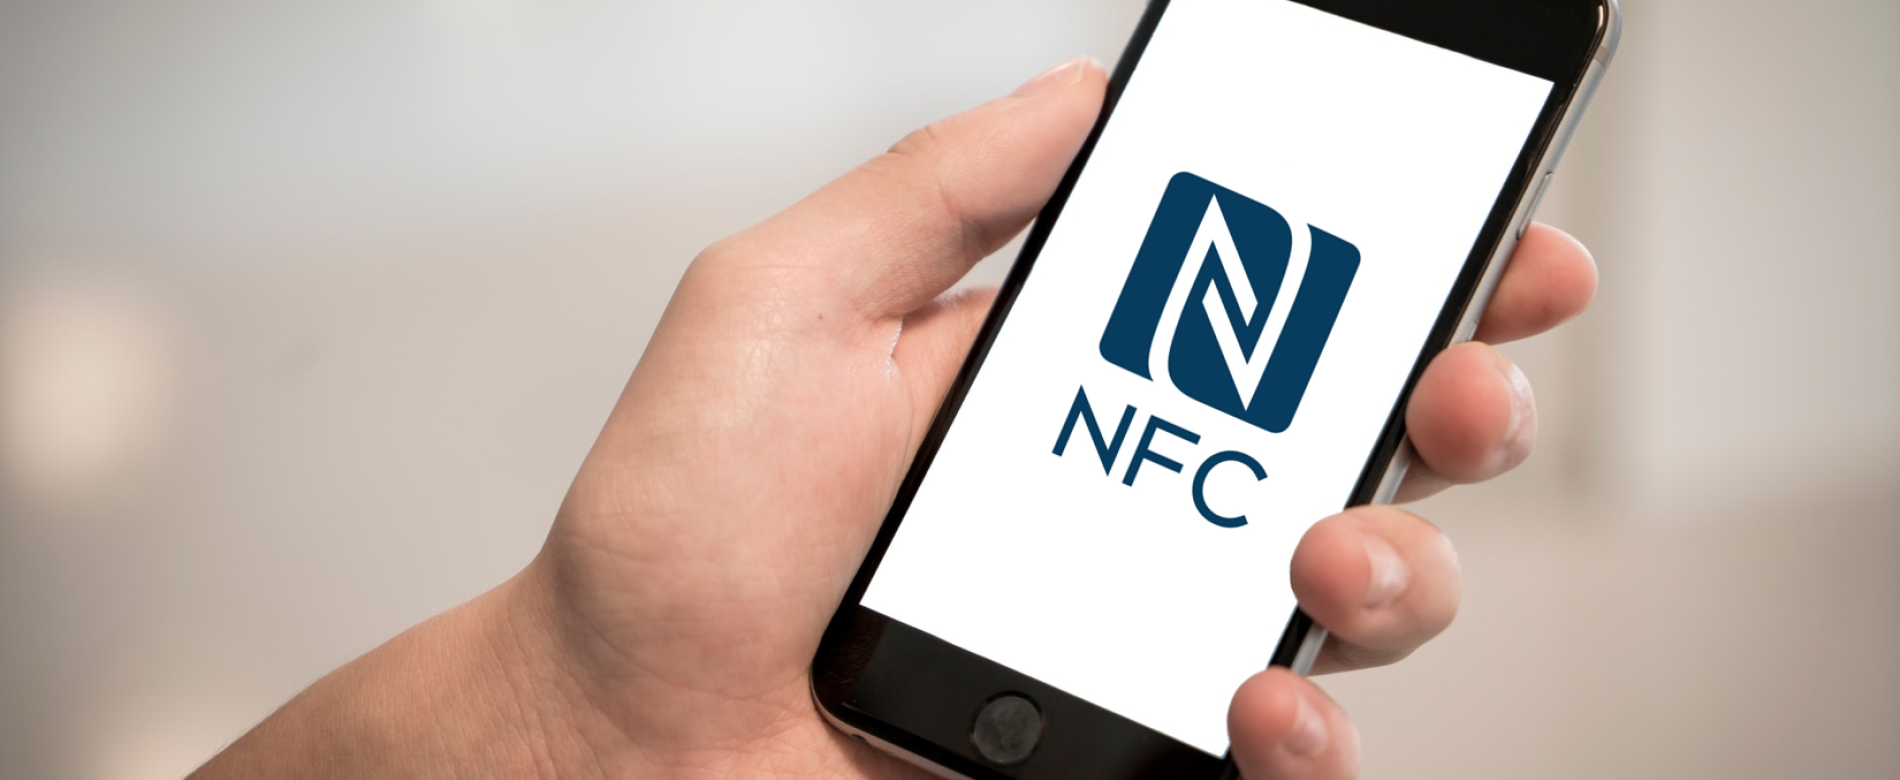 Считать метку nfc. NFC метки. Функция NFC В смартфоне. NFC tag. NFC Инлей.